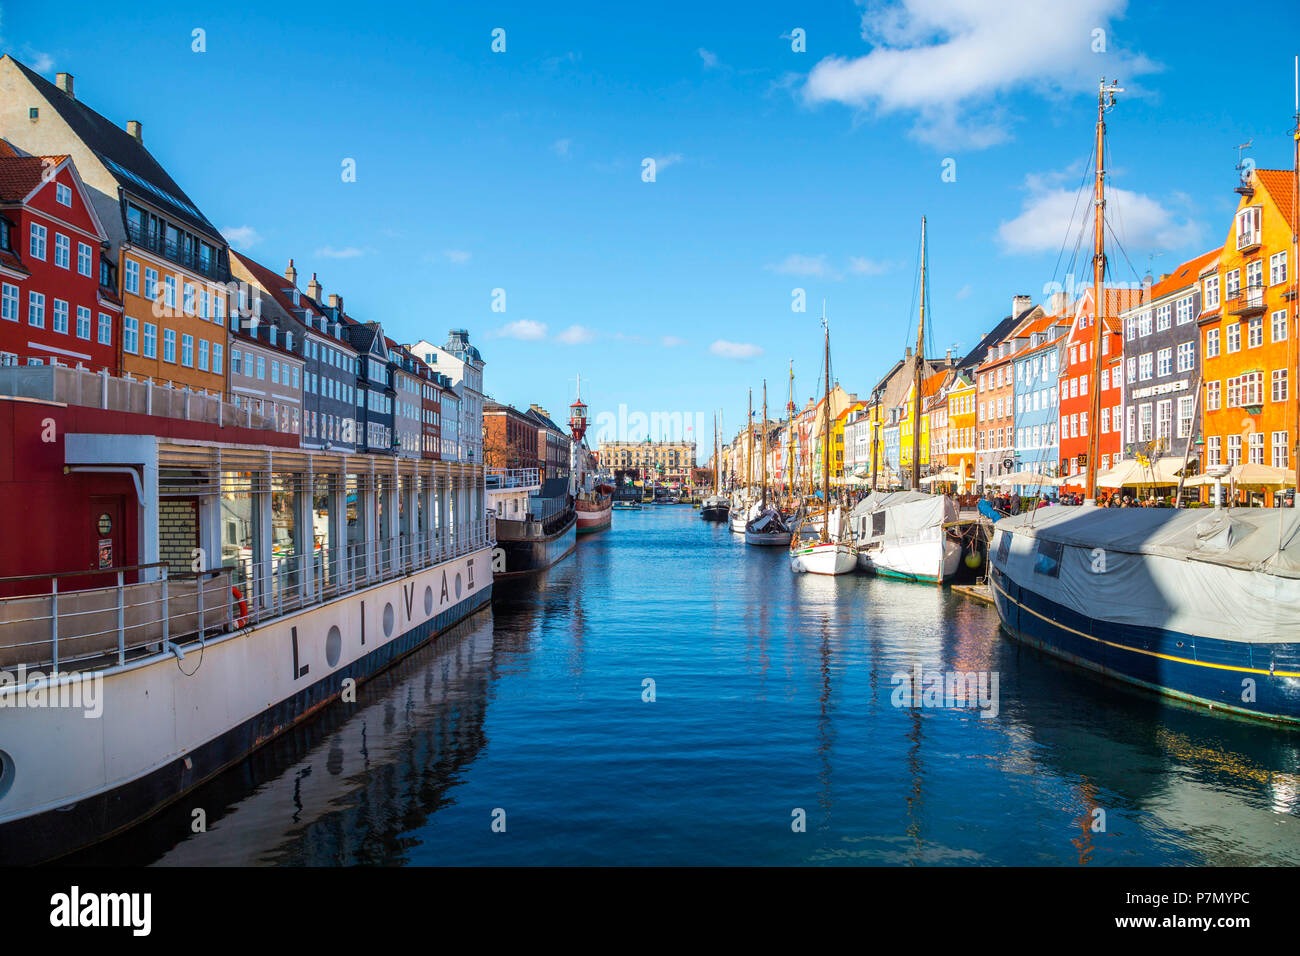 Nyhavn, Copenhagen old town, Denmark Stock Photo